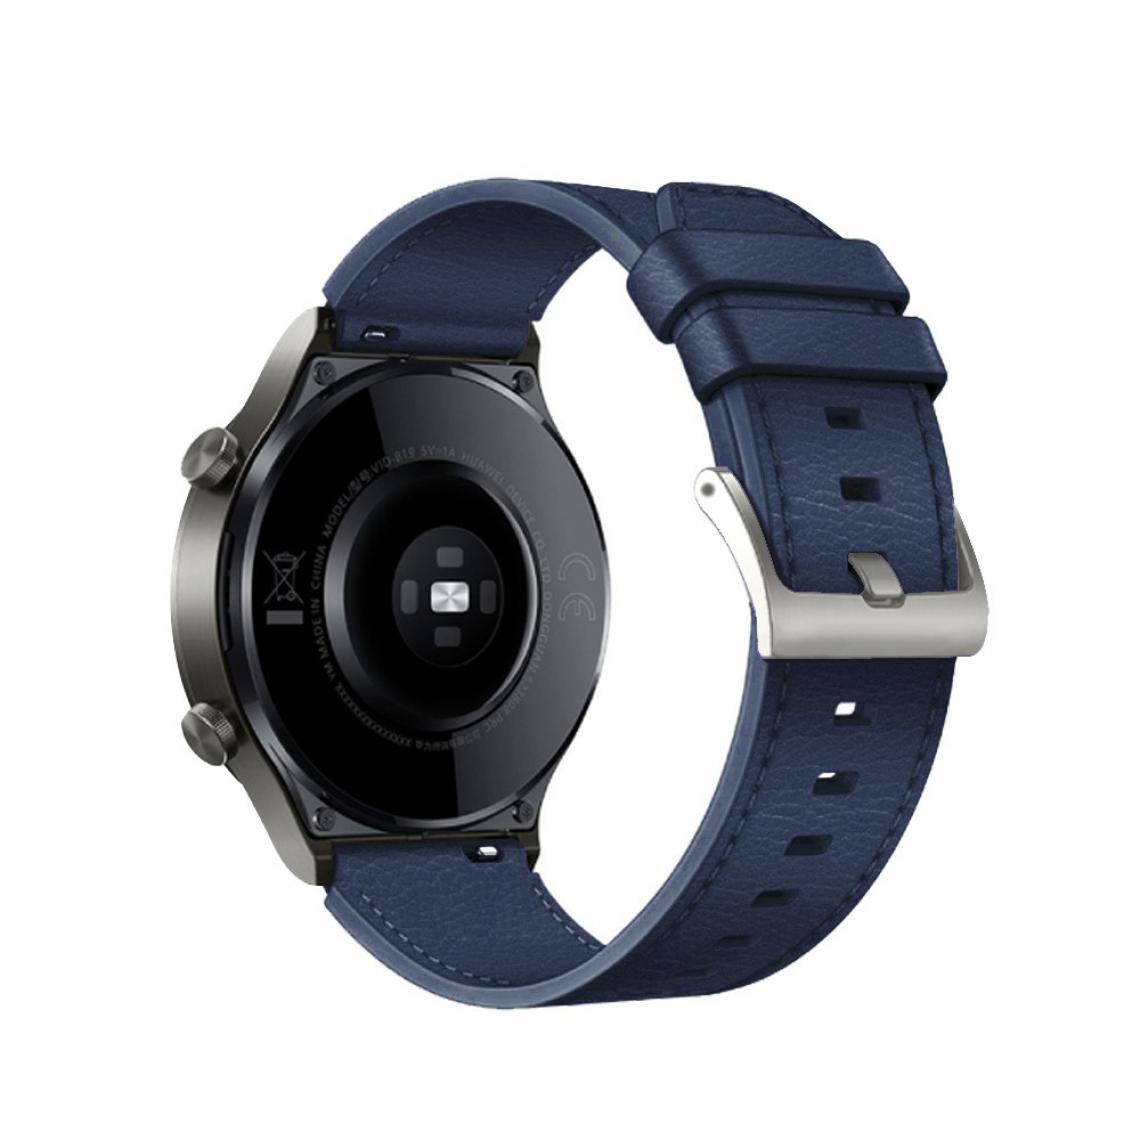 Other - Bracelet en PU 22mm Réglable bleu nuit pour votre Huawei Watch GT 2 46mm/GT 2 Pro - Accessoires bracelet connecté